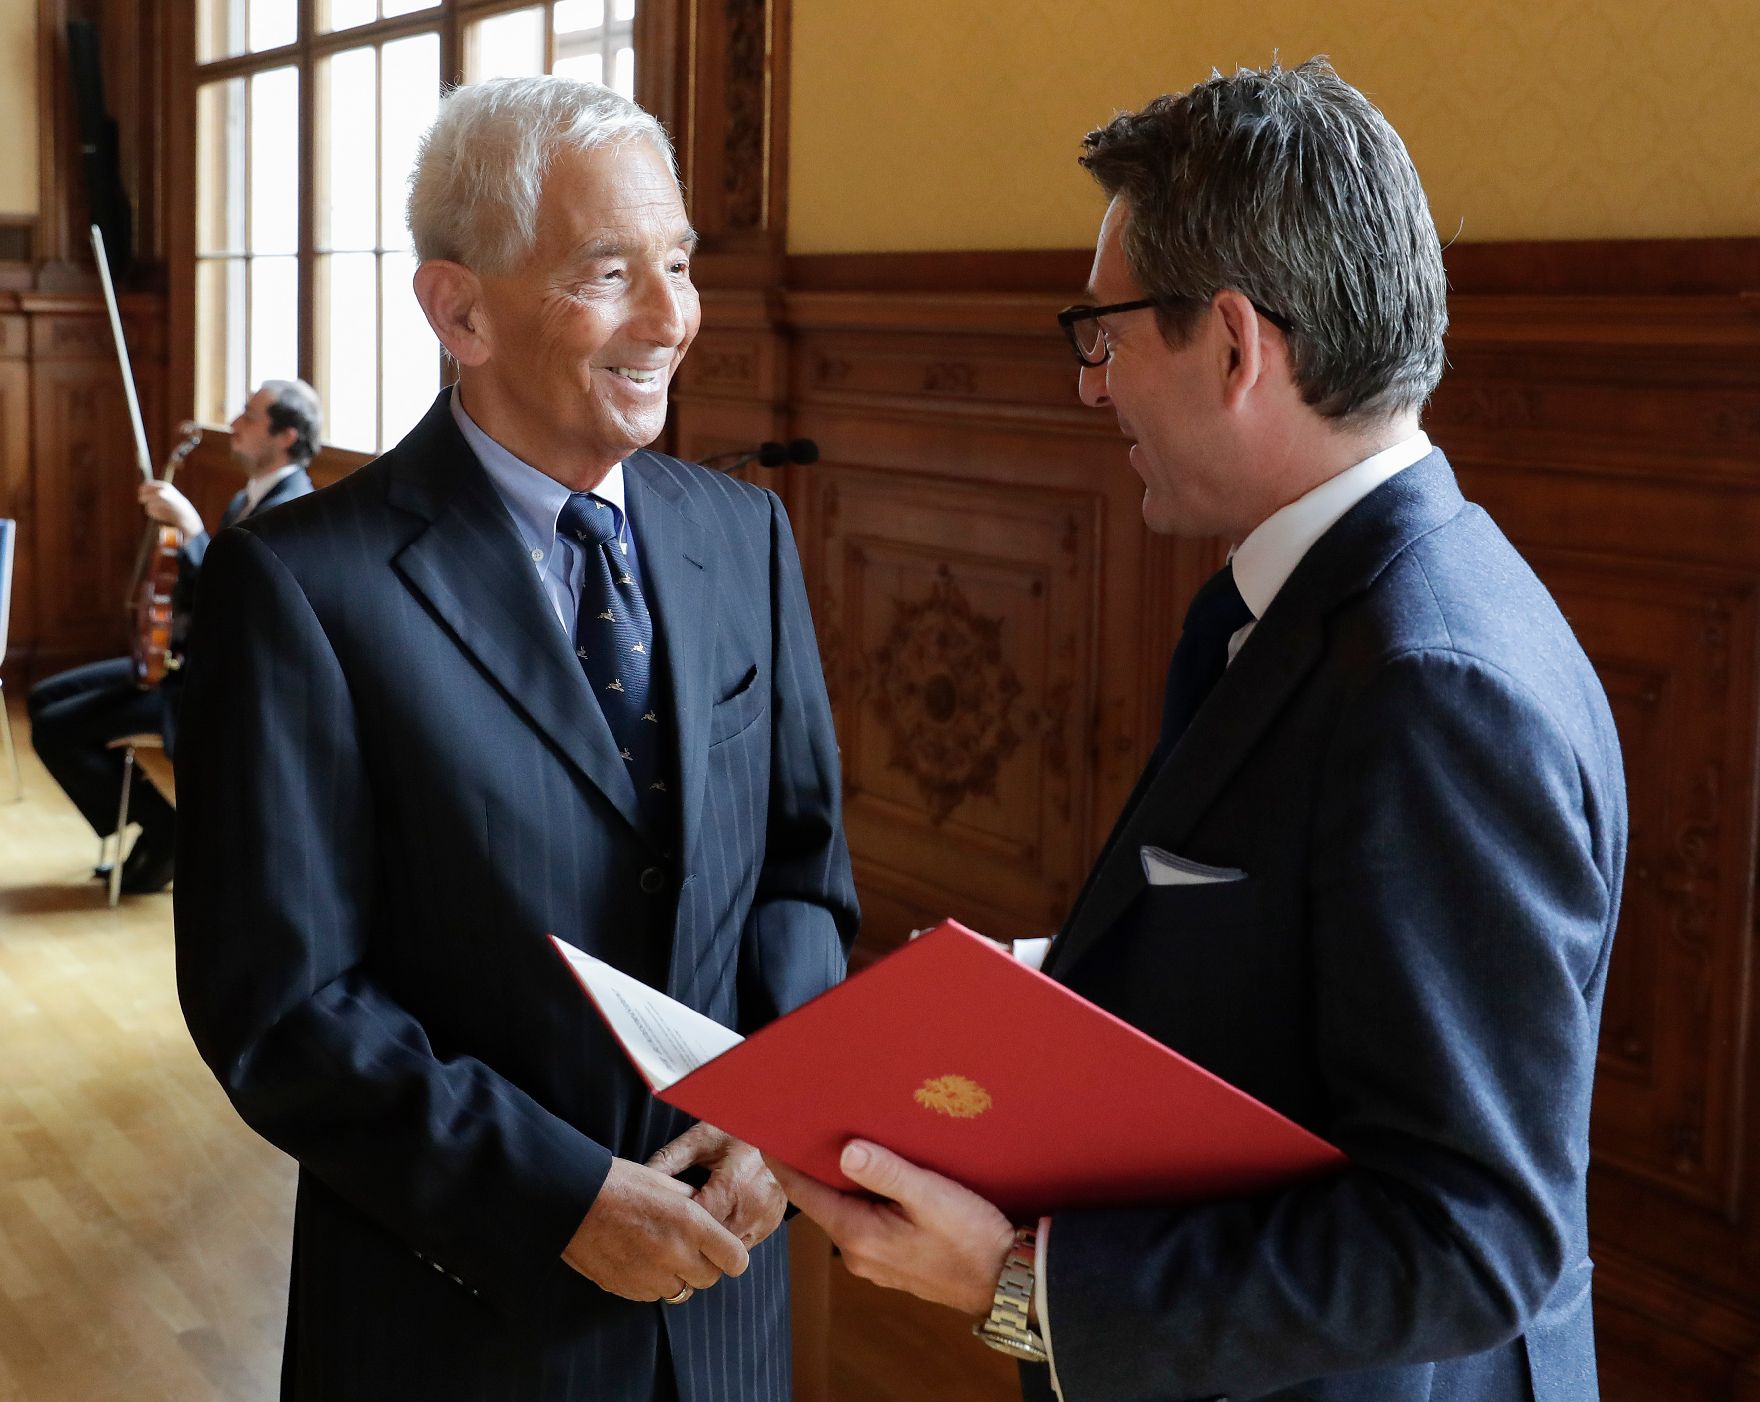 Am 15. Oktober 2018 überreichte Sektionschef Jürgen Meindl (r.) das Österreichische Ehrenkreuz für Wissenschaft und Kunst I. Klasse an Bálint András Varga (l.) und den Berufstitel Professor an Anton Gatnar.